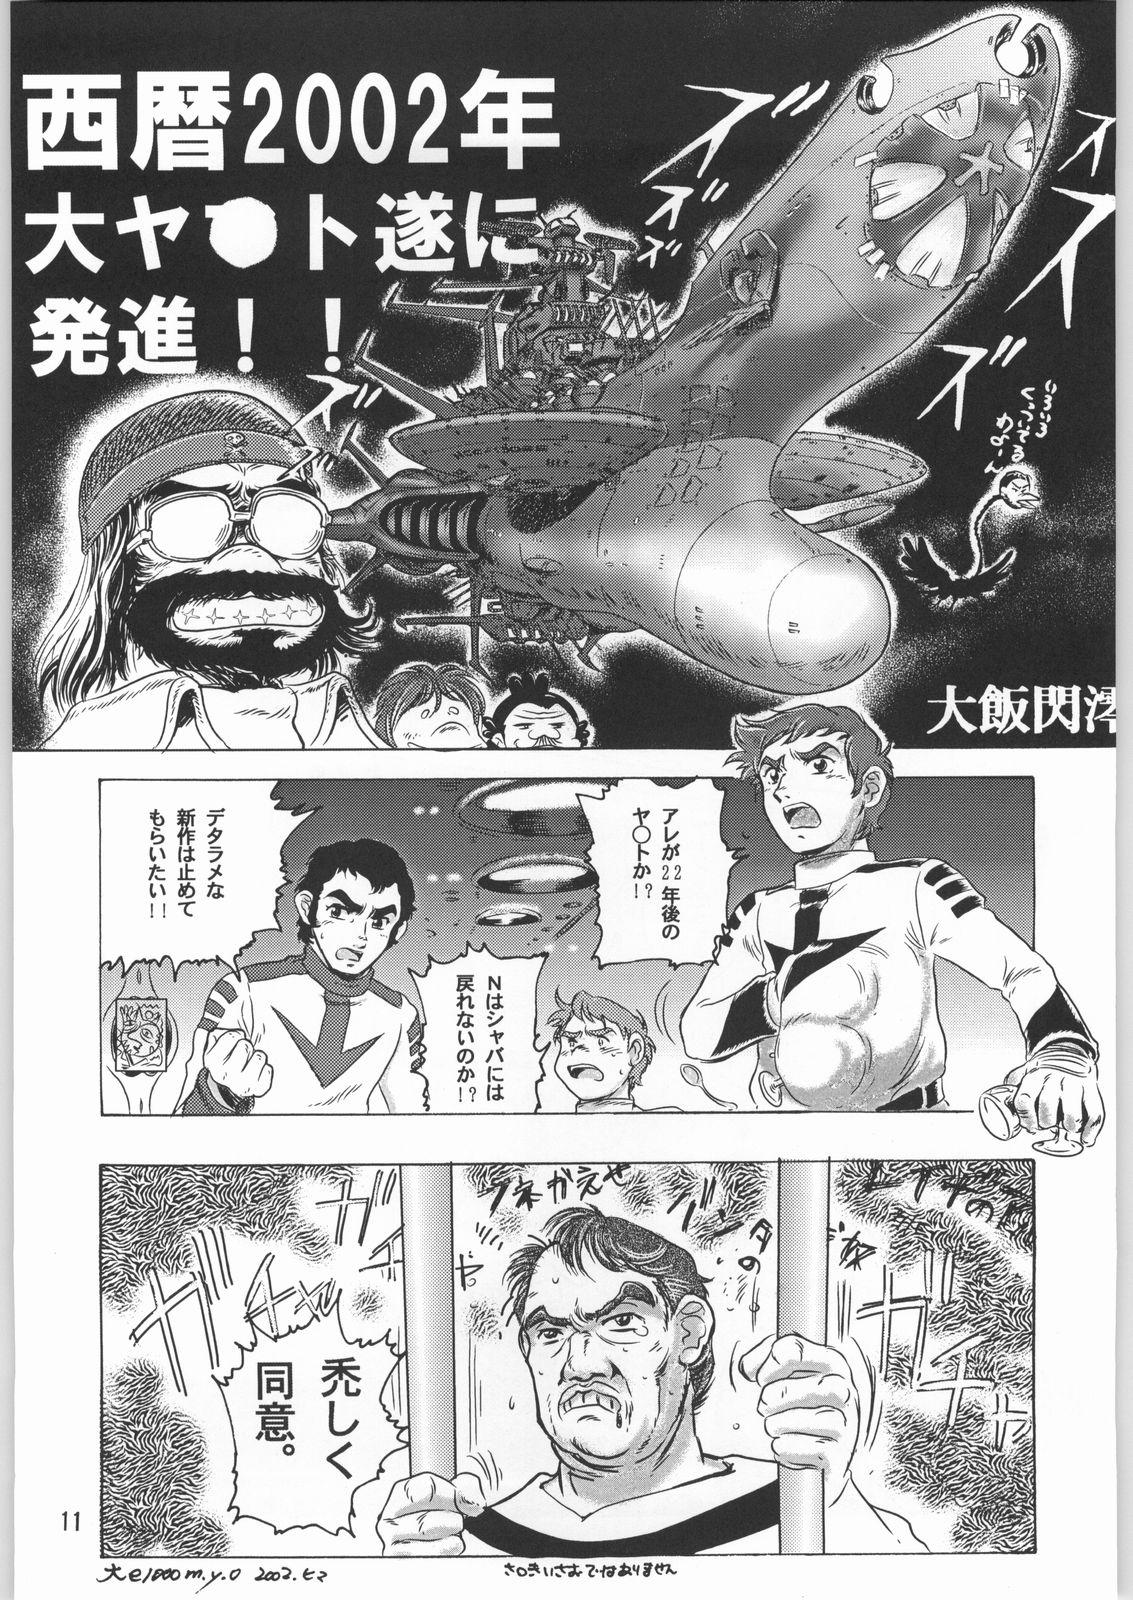 Punished Megaton Punch 1 - Space battleship yamato Chobits Bulge - Page 10